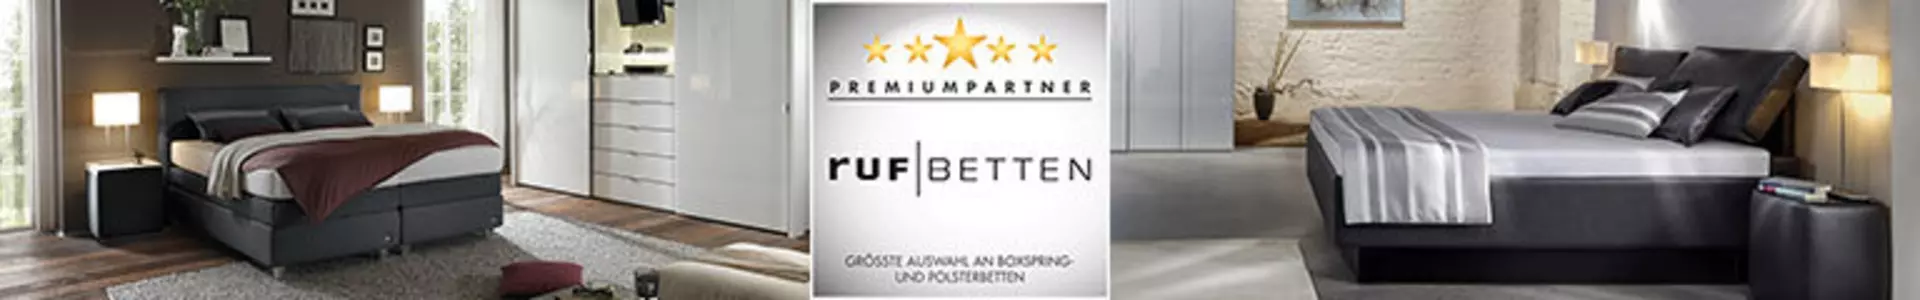 Bannerbild der Premiumpartner-Marke ruf Betten